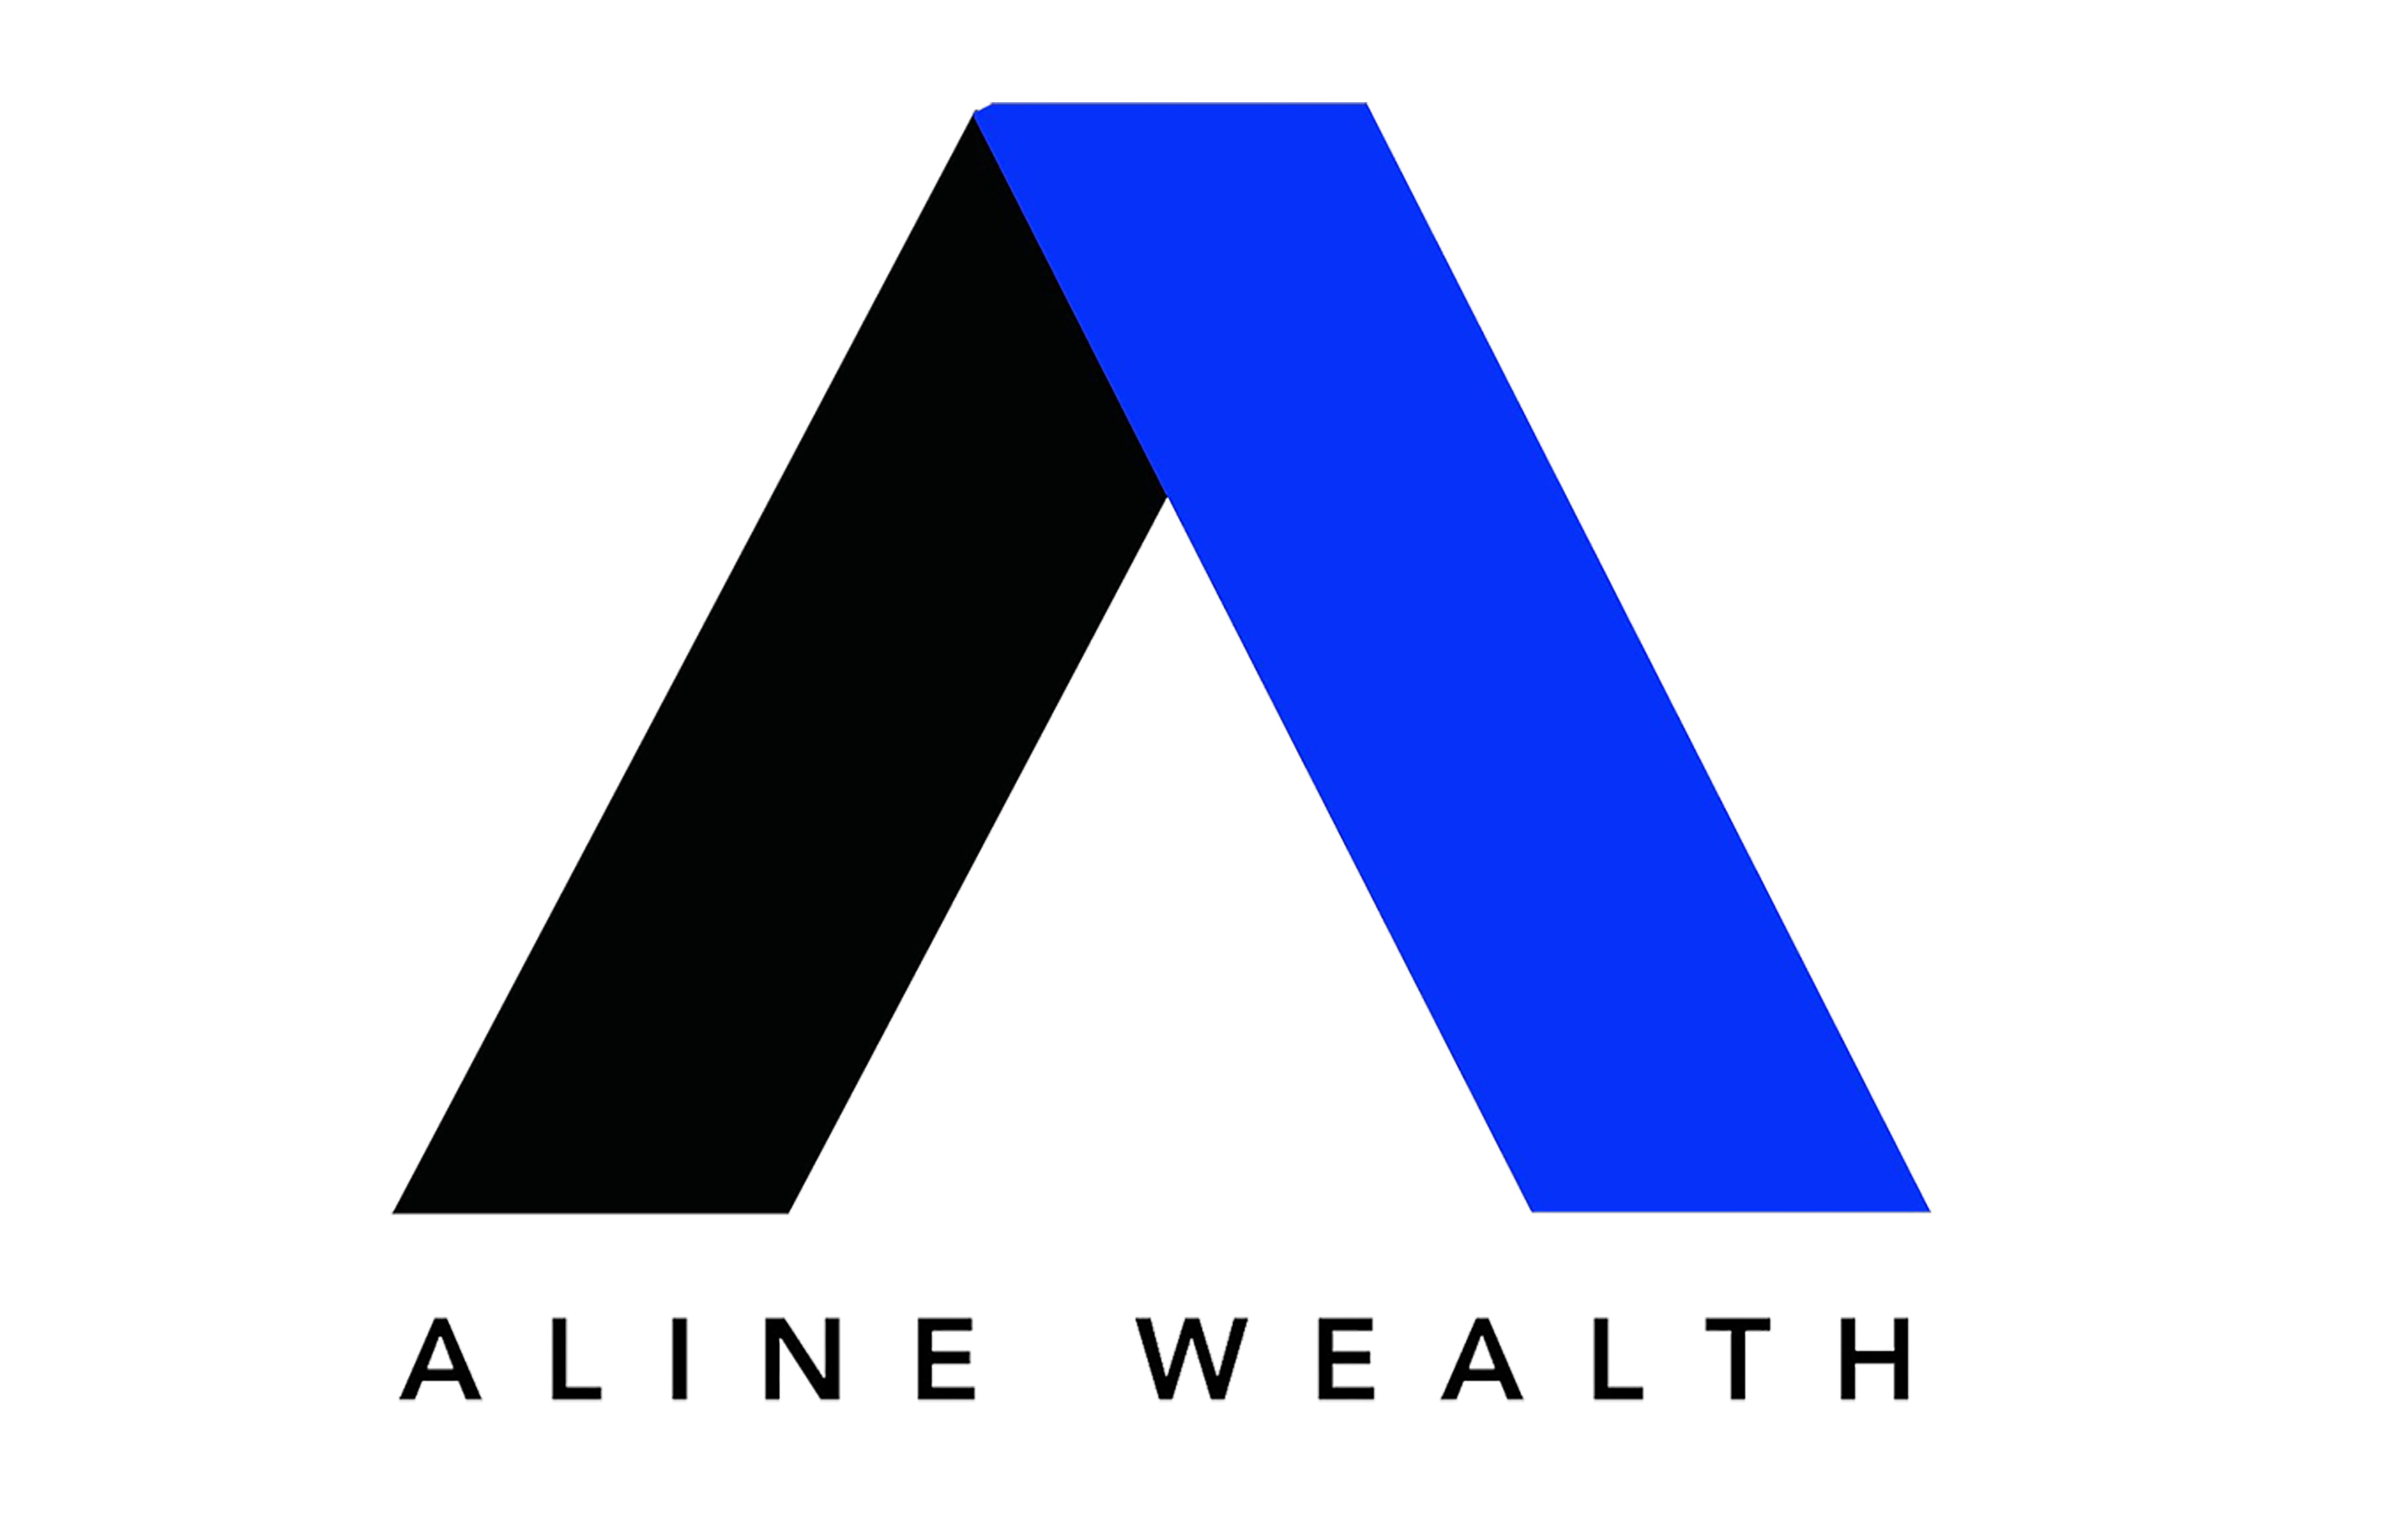 ALINE Wealth